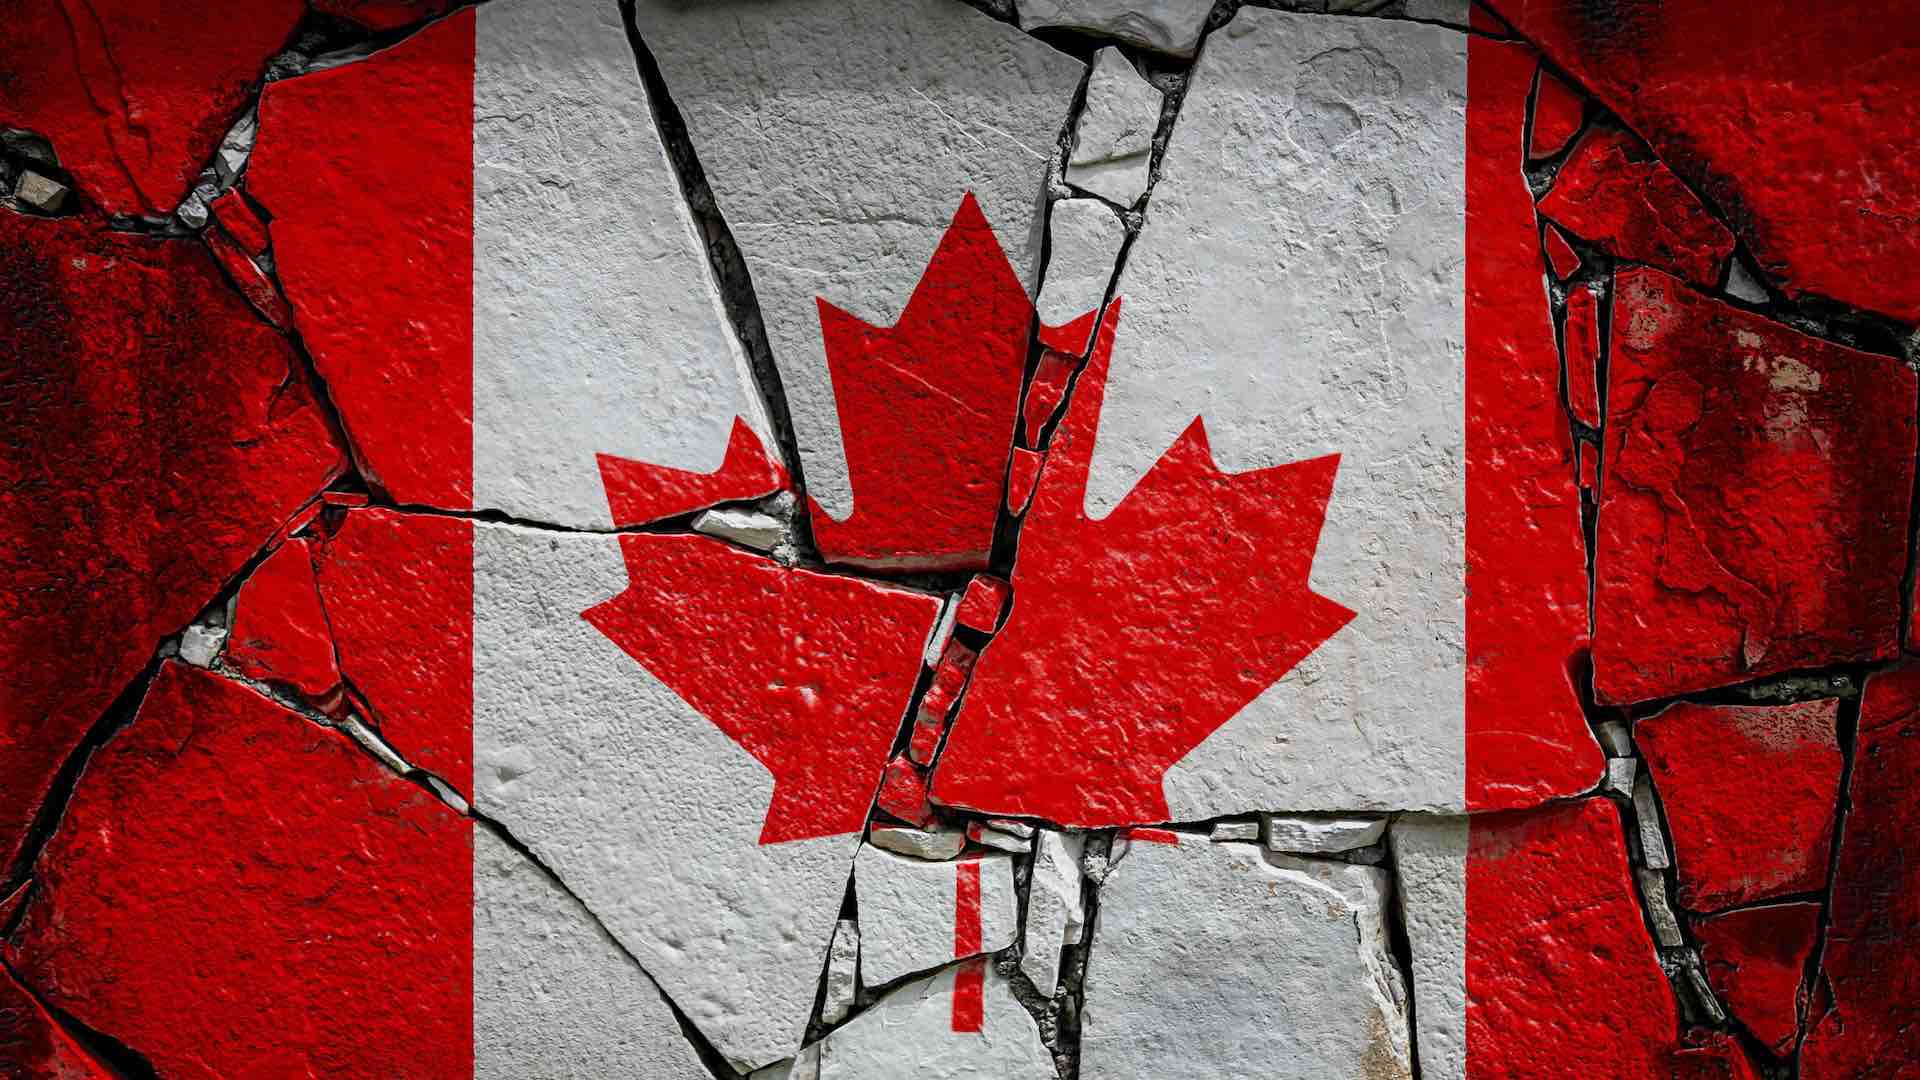 भारताने 41 कॅनेडियन मुत्सद्दींना मागे हटवण्याचा प्रयत्न केल्याने राजनैतिक दरी वाढत आहे